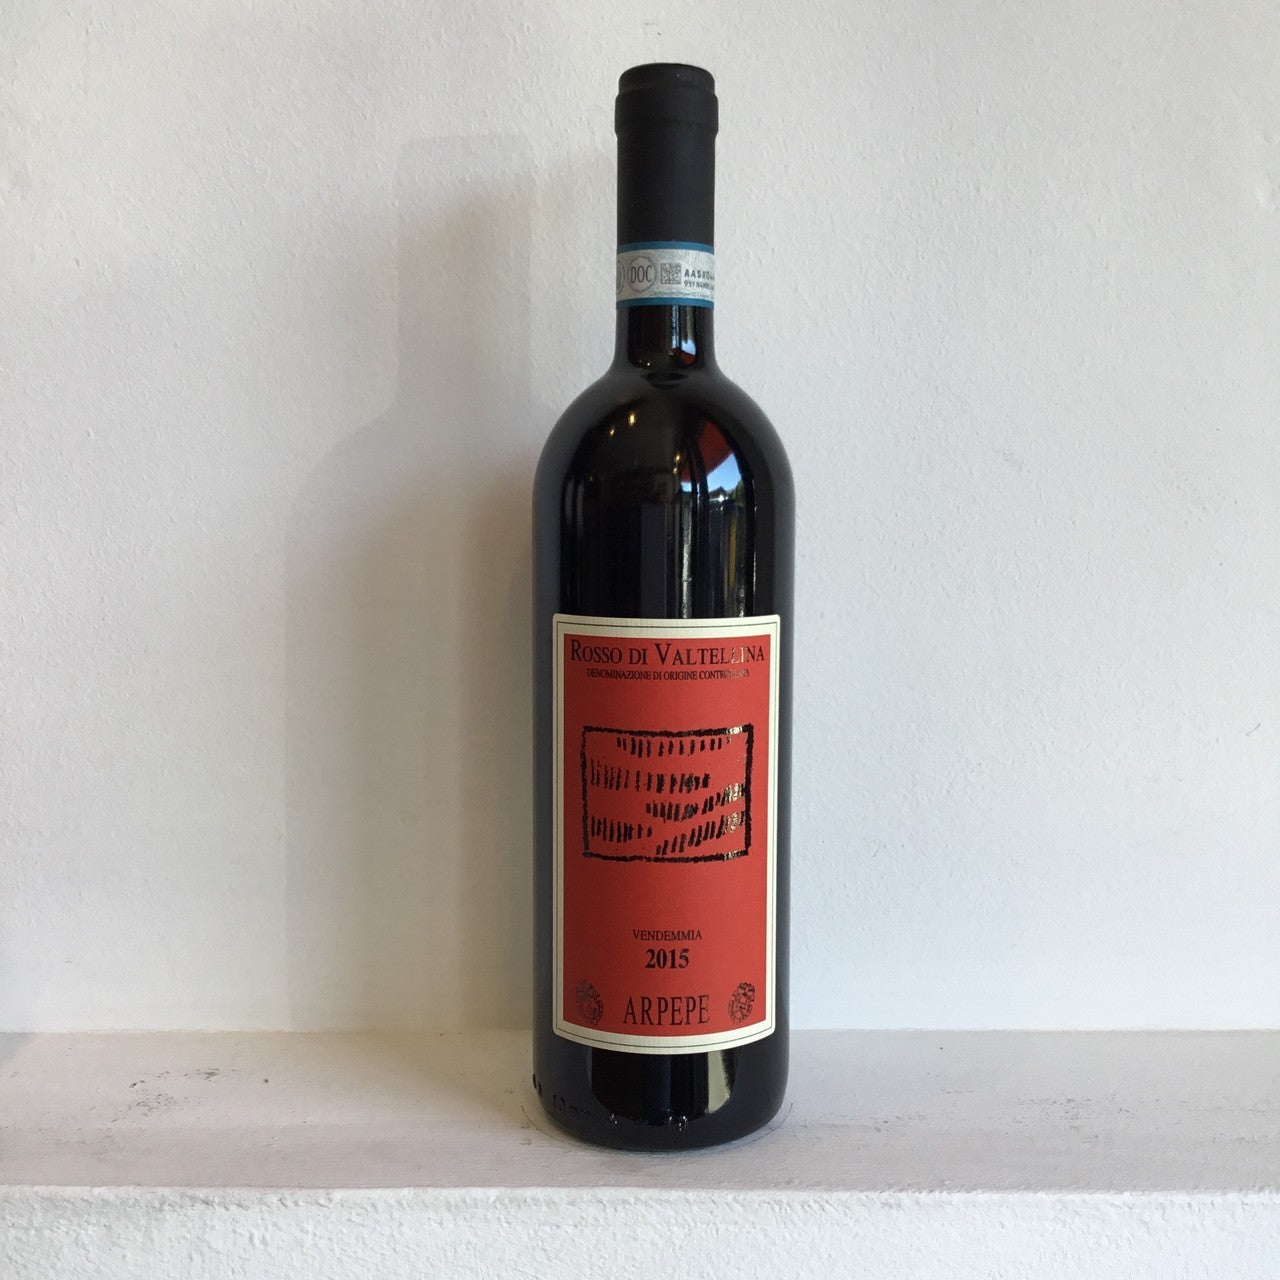 Ar Pe Pe Rosso di Valtellina 750mL dark wine bottle with a red label